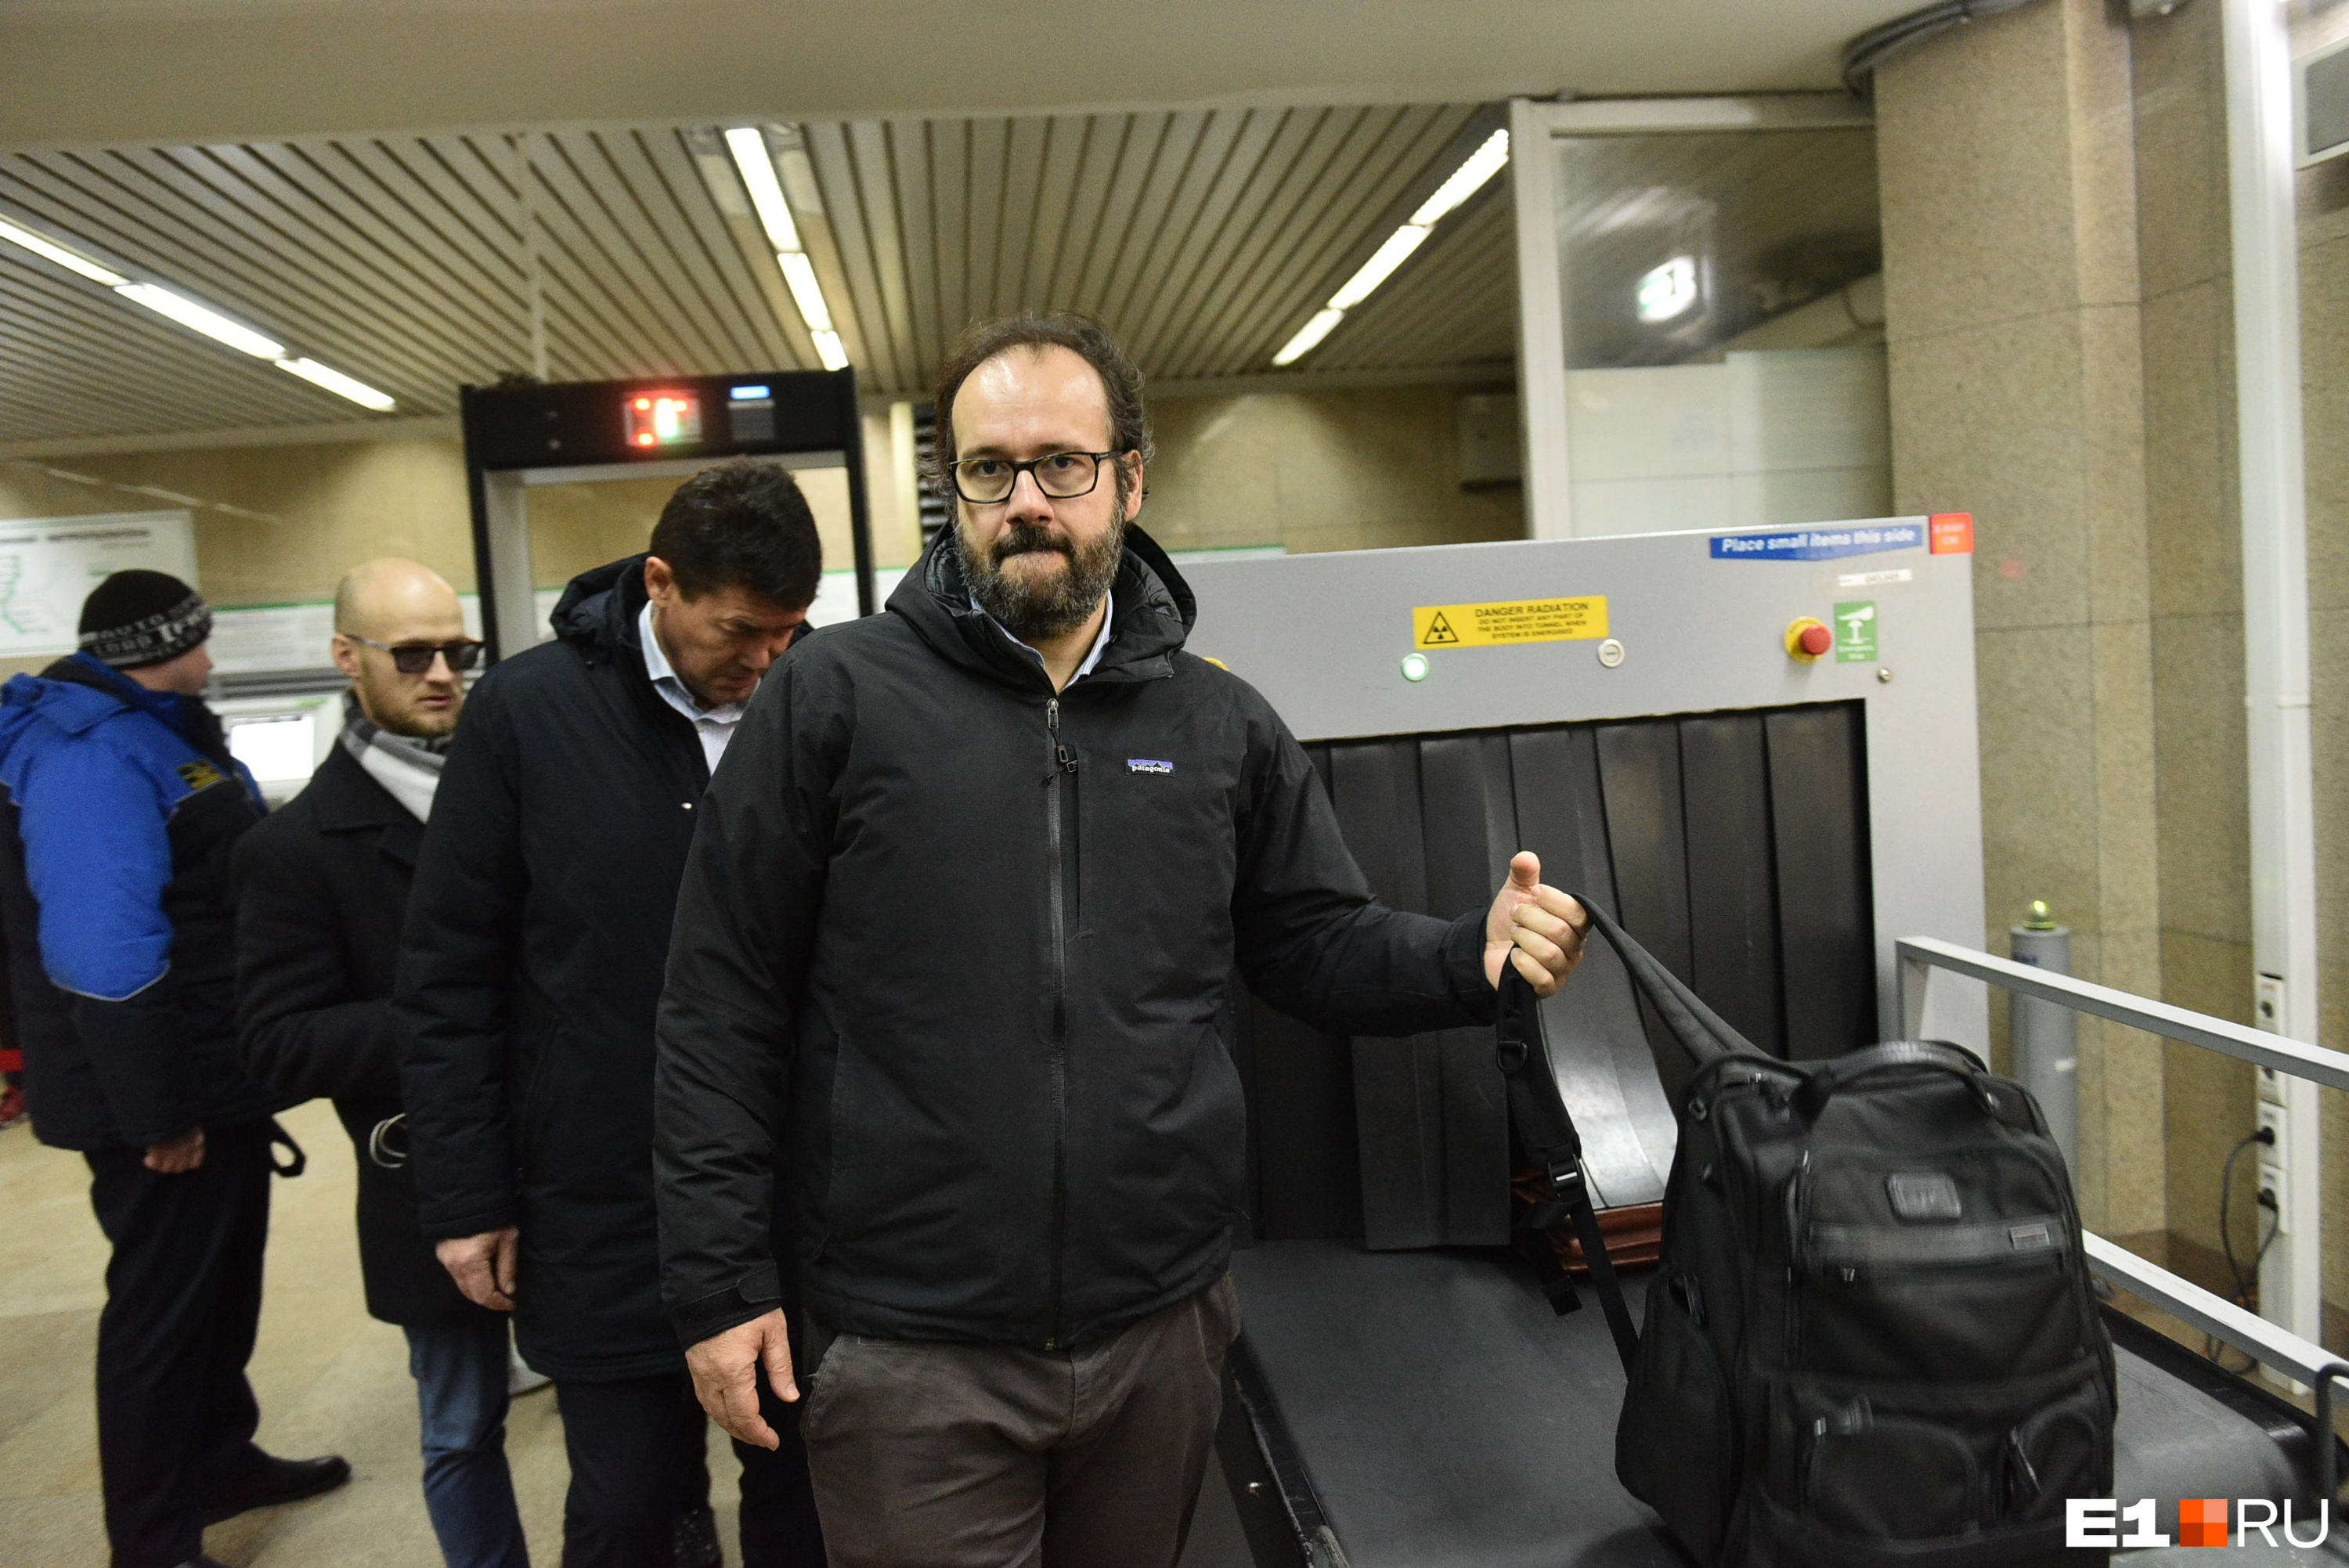 Итальянский урбанист говорит, что такая проверка багажа крадет время пассажиров. Кажется, в этом с ним согласится большинство горожан